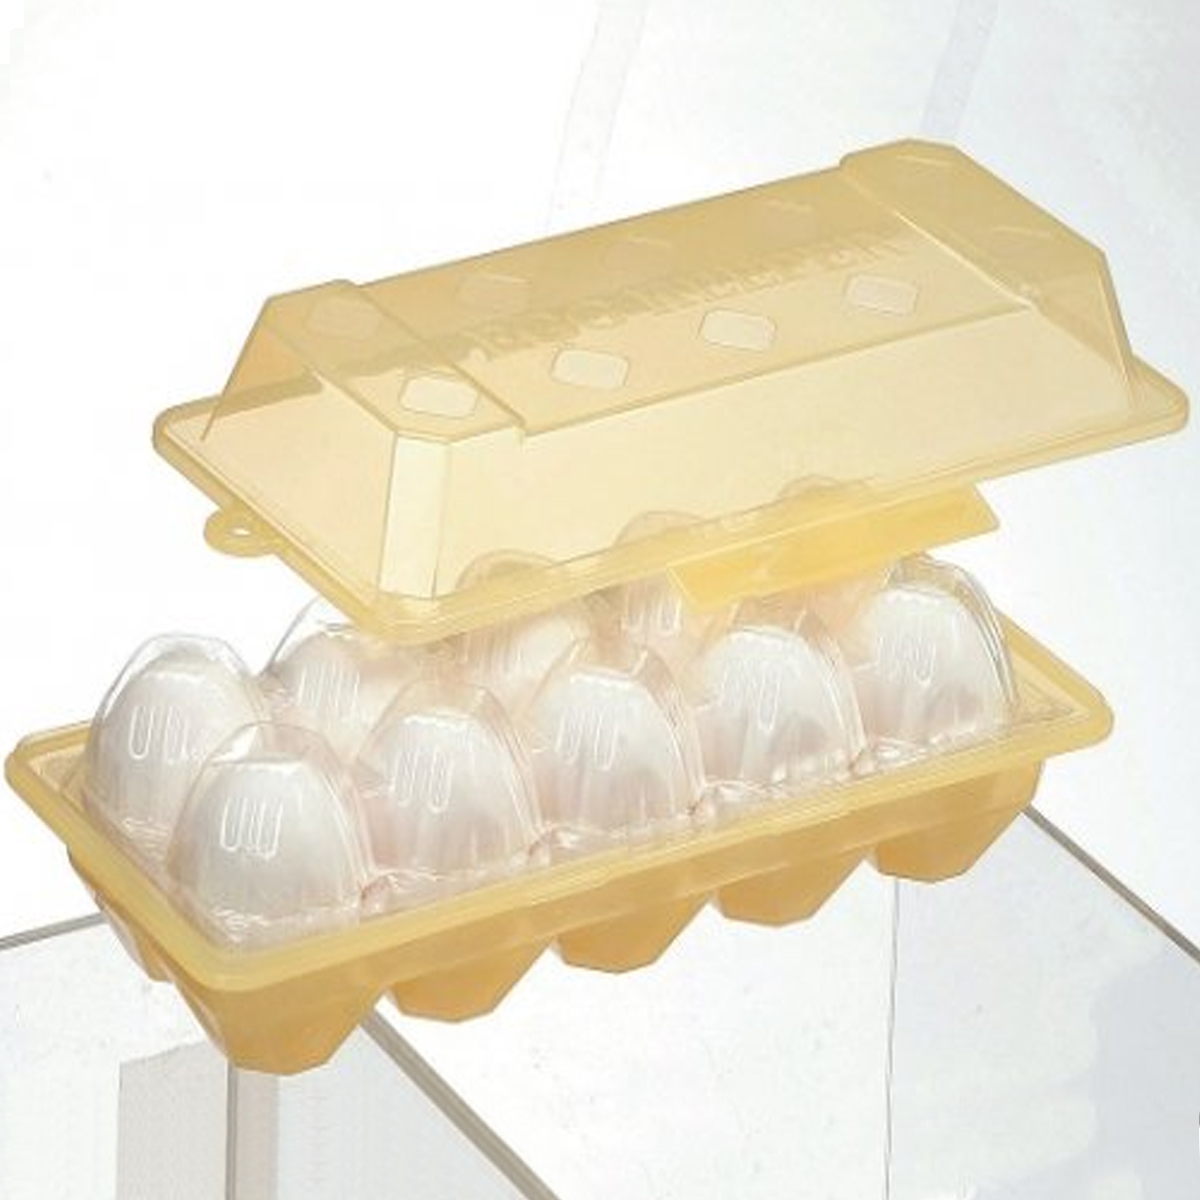 【キッチン便利小物】パック卵保護専用ケース たまごまもるくん EGCP1【日本製】